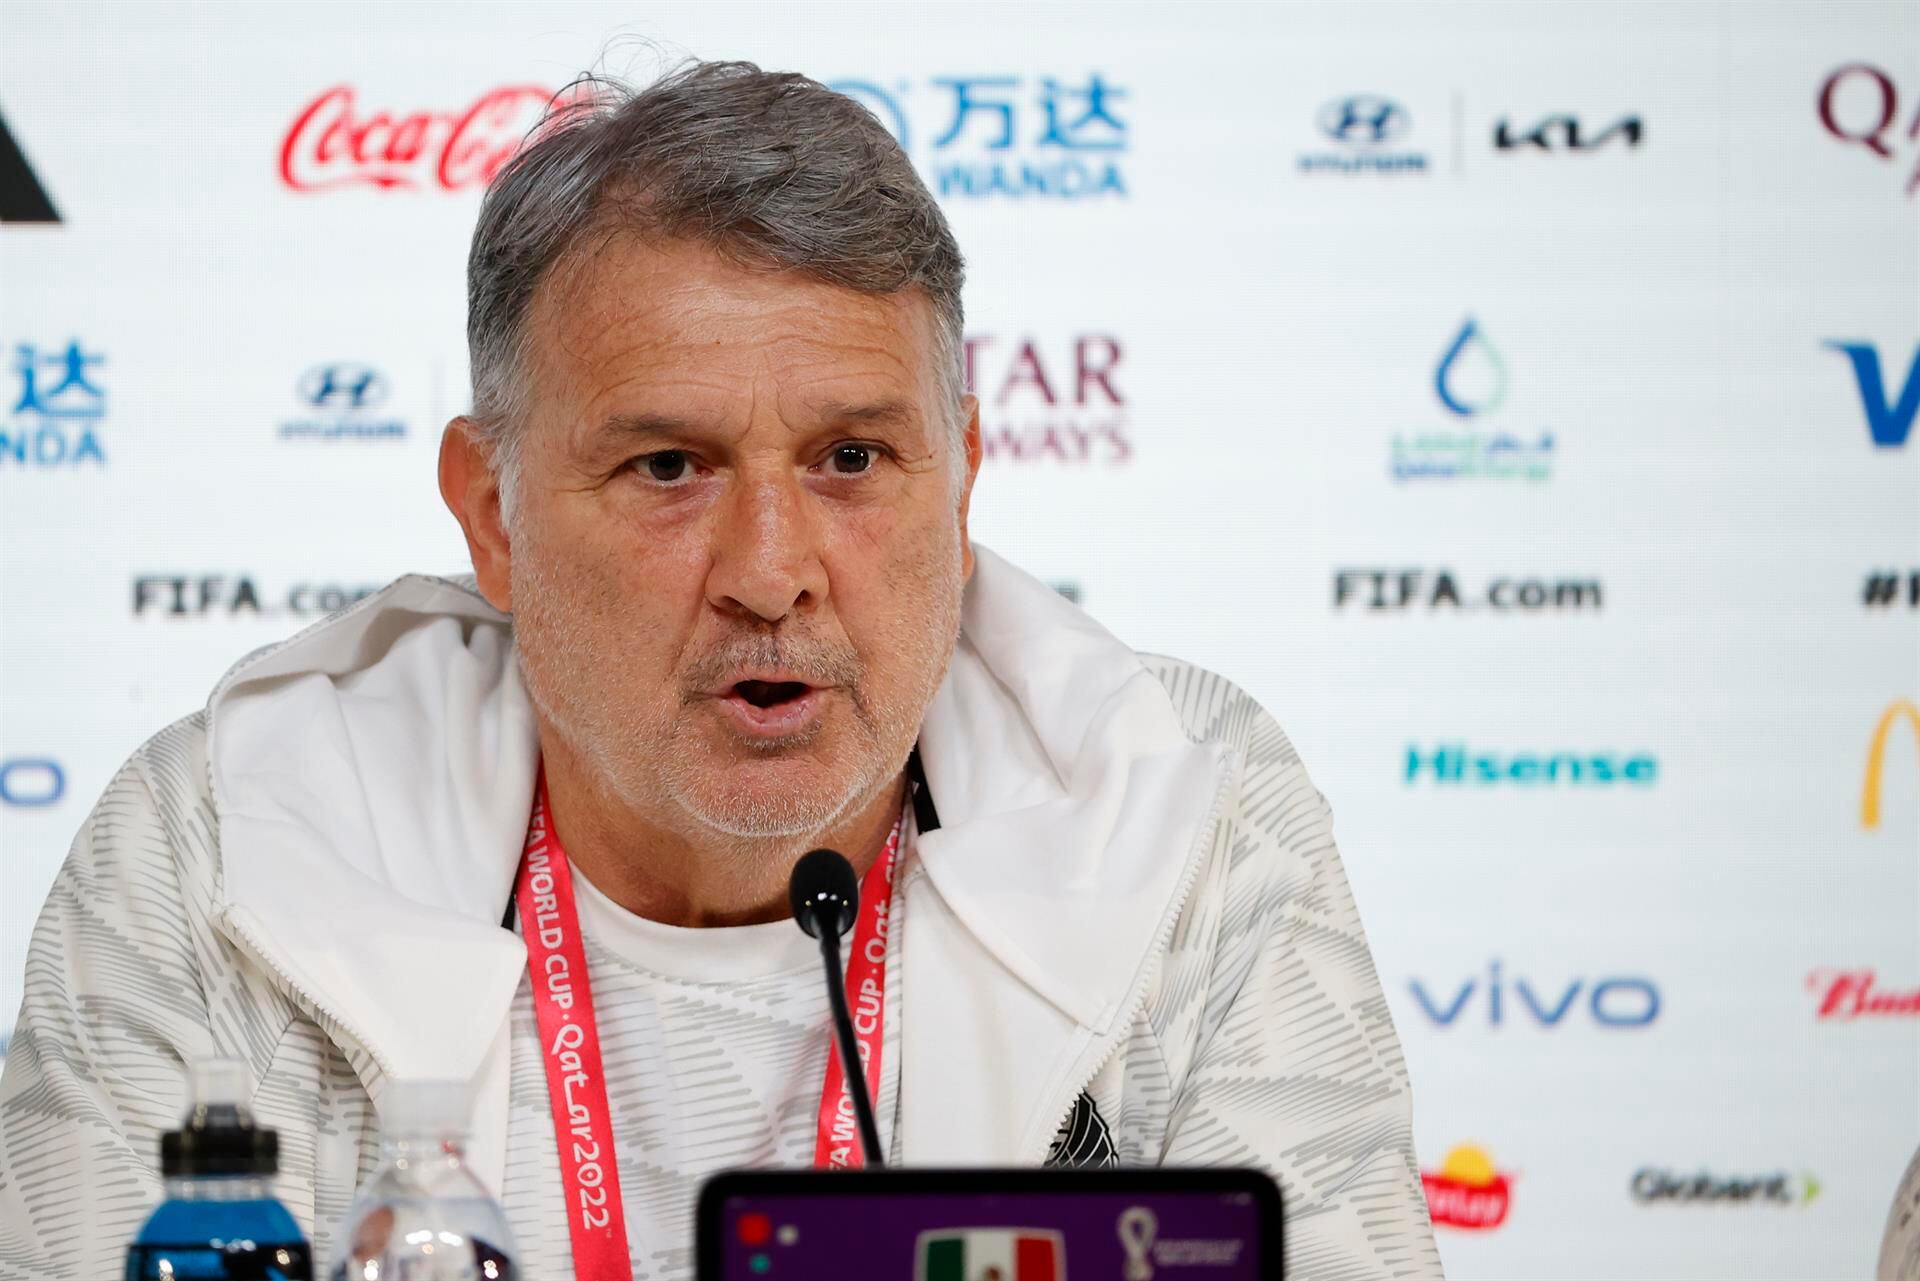 El entrenador de la Selección Mexicana, Gerardo ‘Tata’ Martino, durante una rueda de prensa en Doha, Catar, en el marco del Mundial de fútbol Qatar 2022.